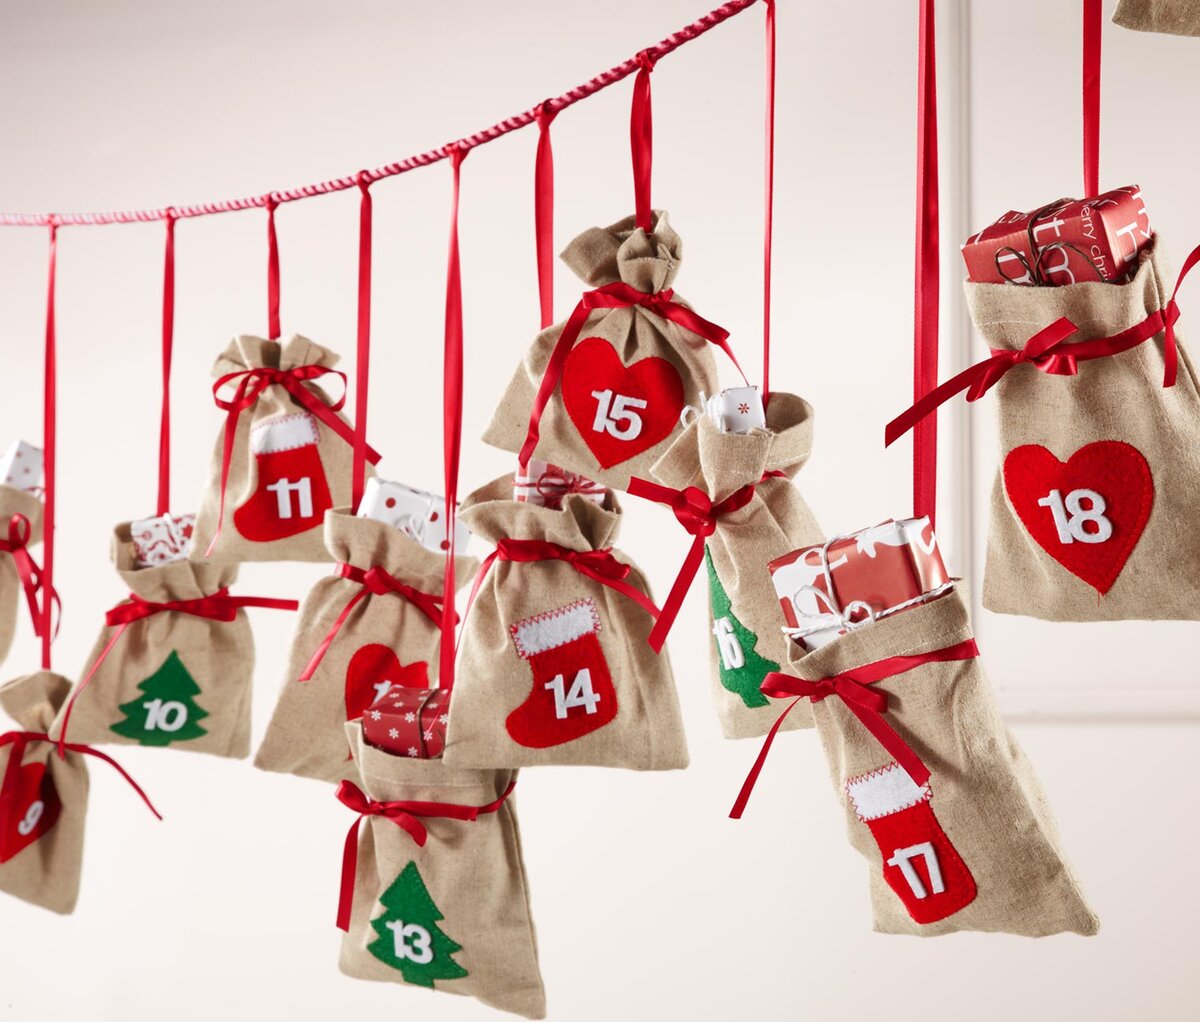 Адвент-календарь - это календарь ожидания Нового года или Рождества, который позволяет отсчитывать дни до праздника и создает новогоднее настроение.
Вариантов оформления много.-1-3